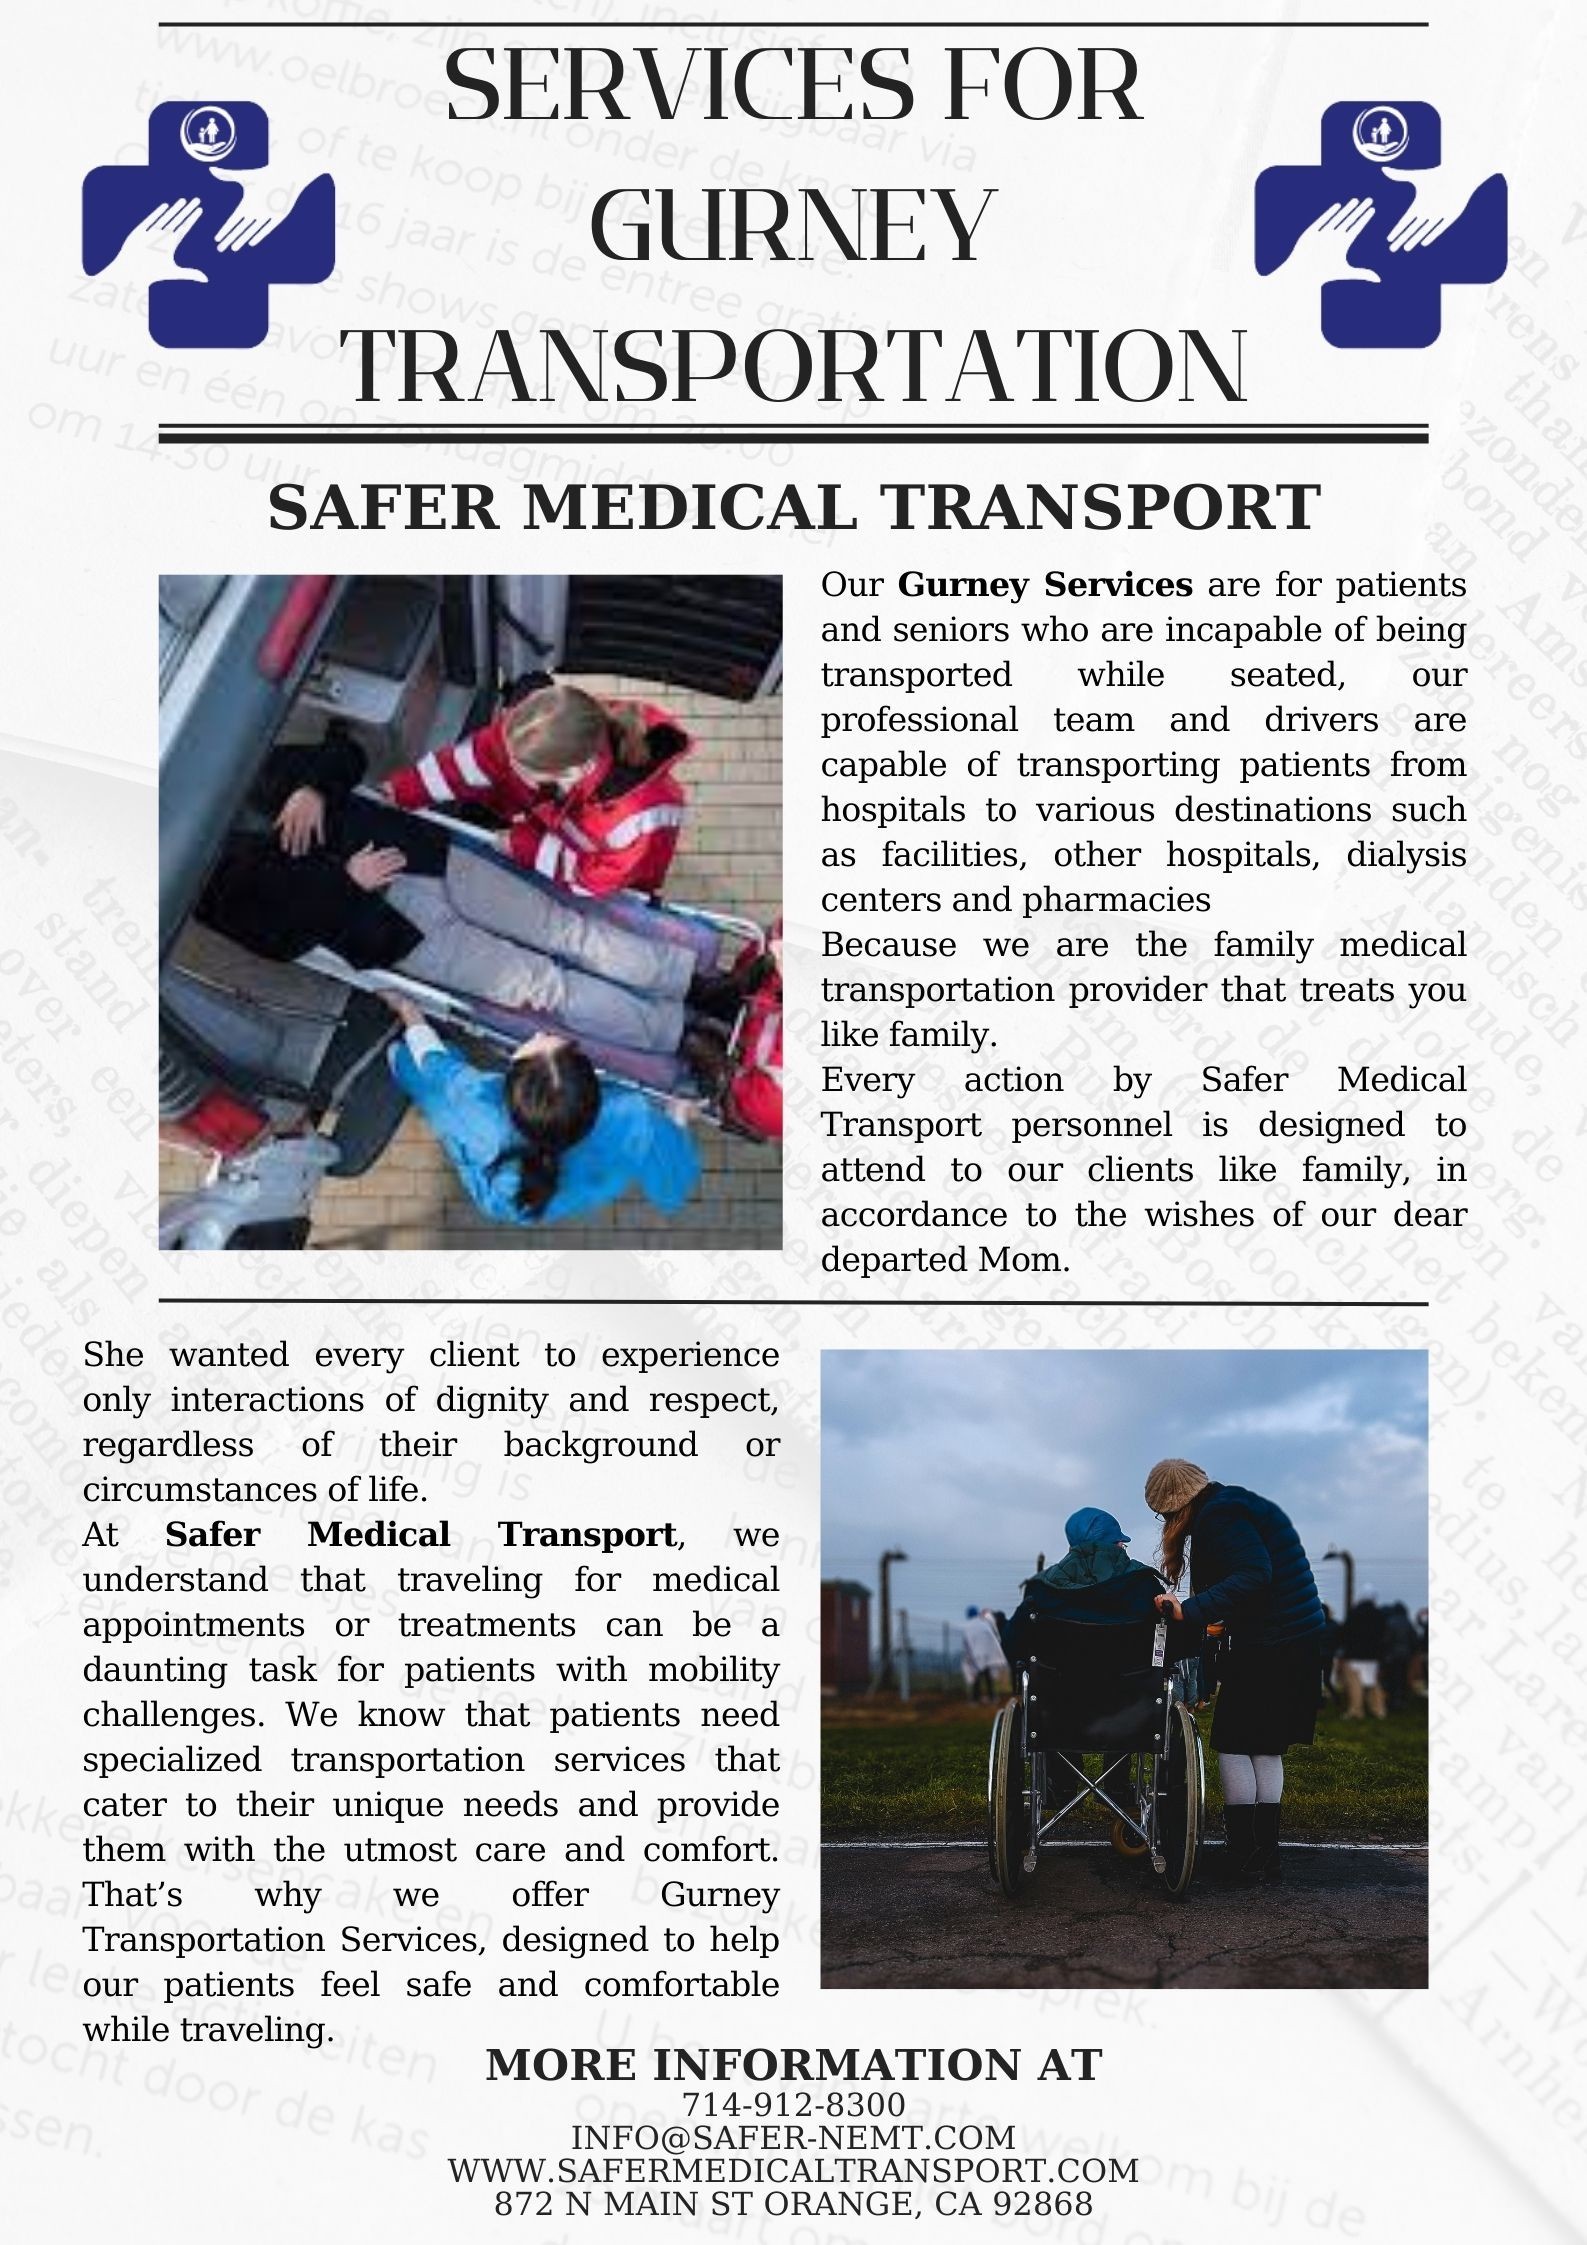 Services For Gurney Transportation - www.safermedicaltransport.com